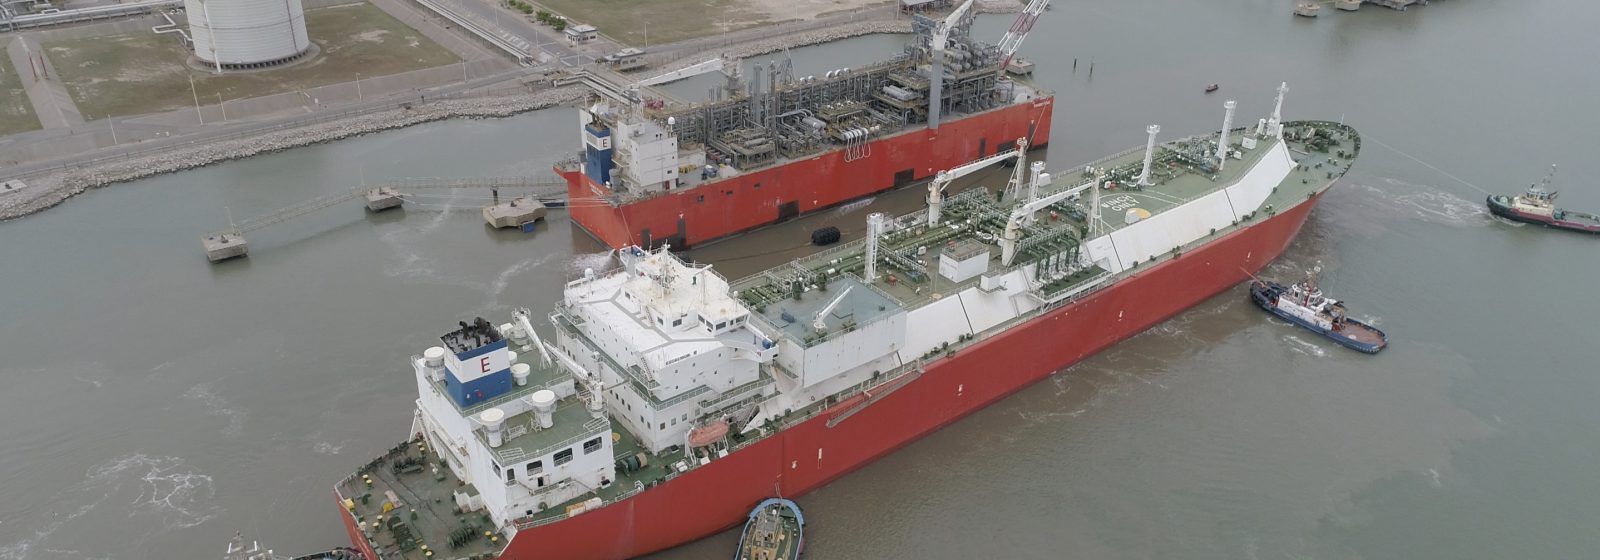 Lng-tanker 'Excalibur' van Antwerpse rederij Exmar